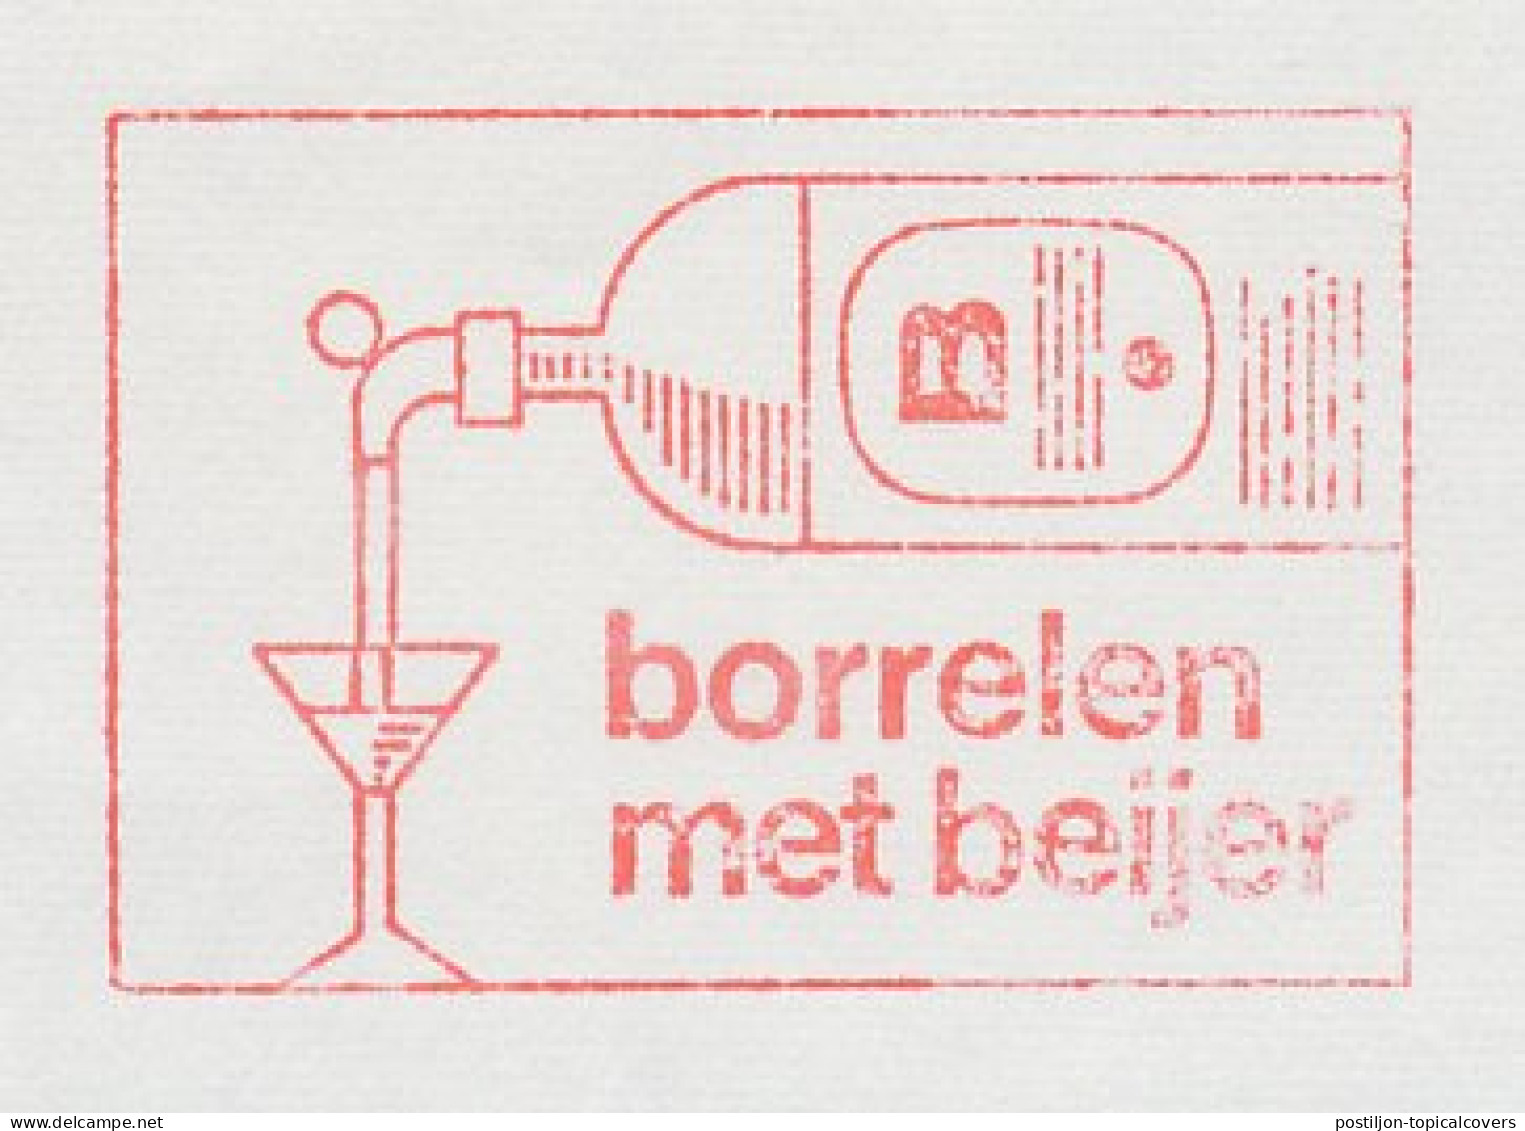 Meter Cut Netherlands 1985 Alcohol - Liquor - Vins & Alcools